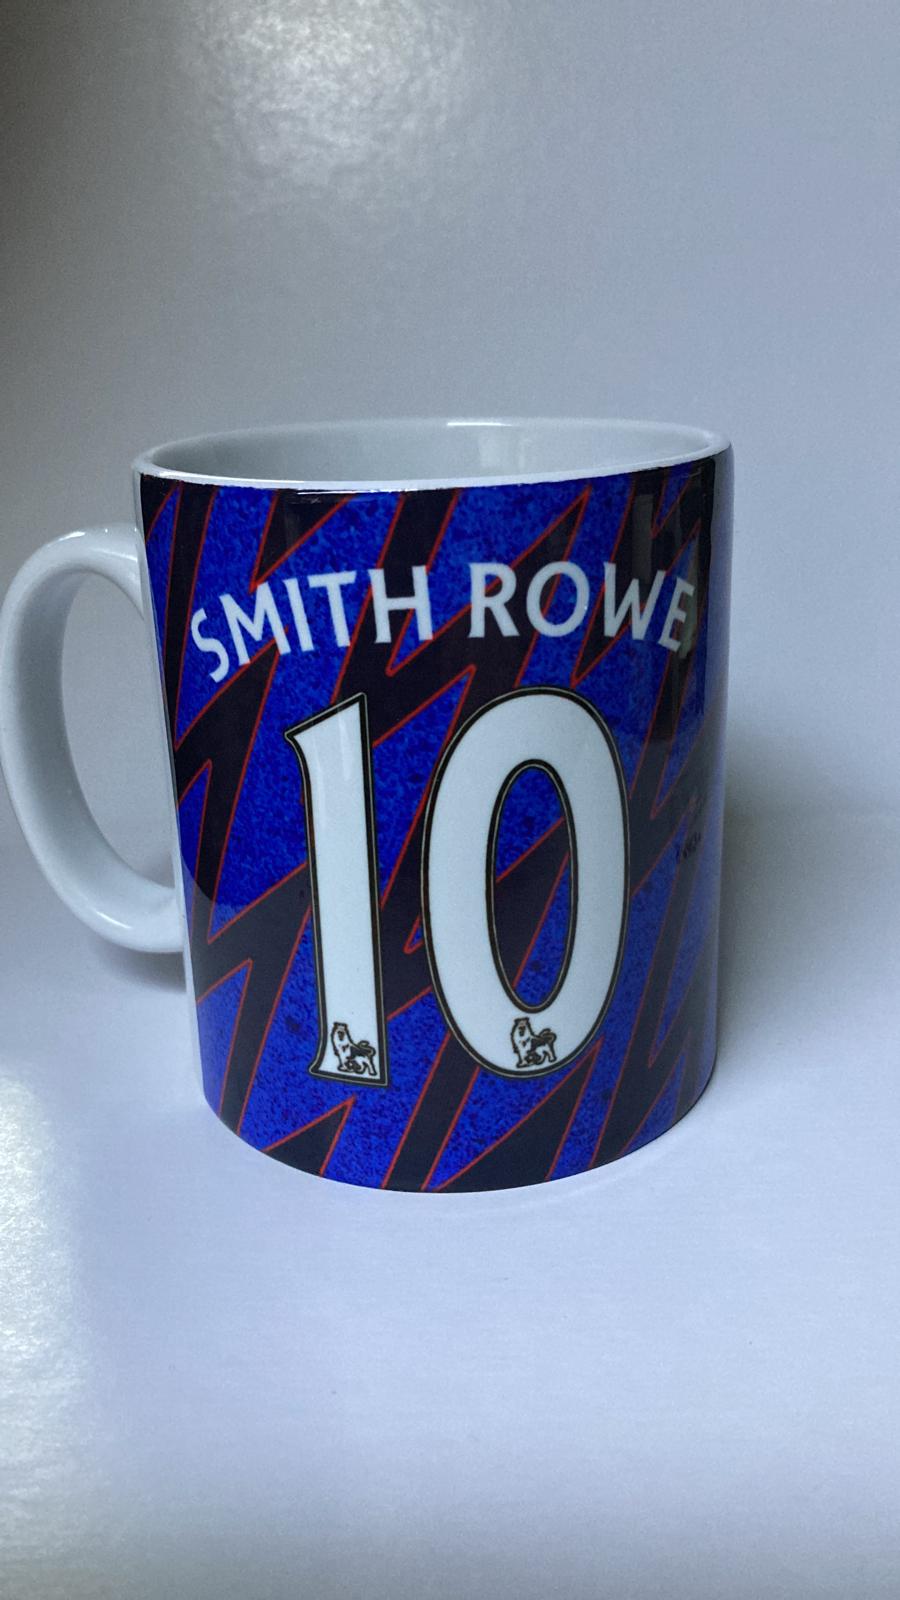 Smith Rowe 3 rd Kit mug